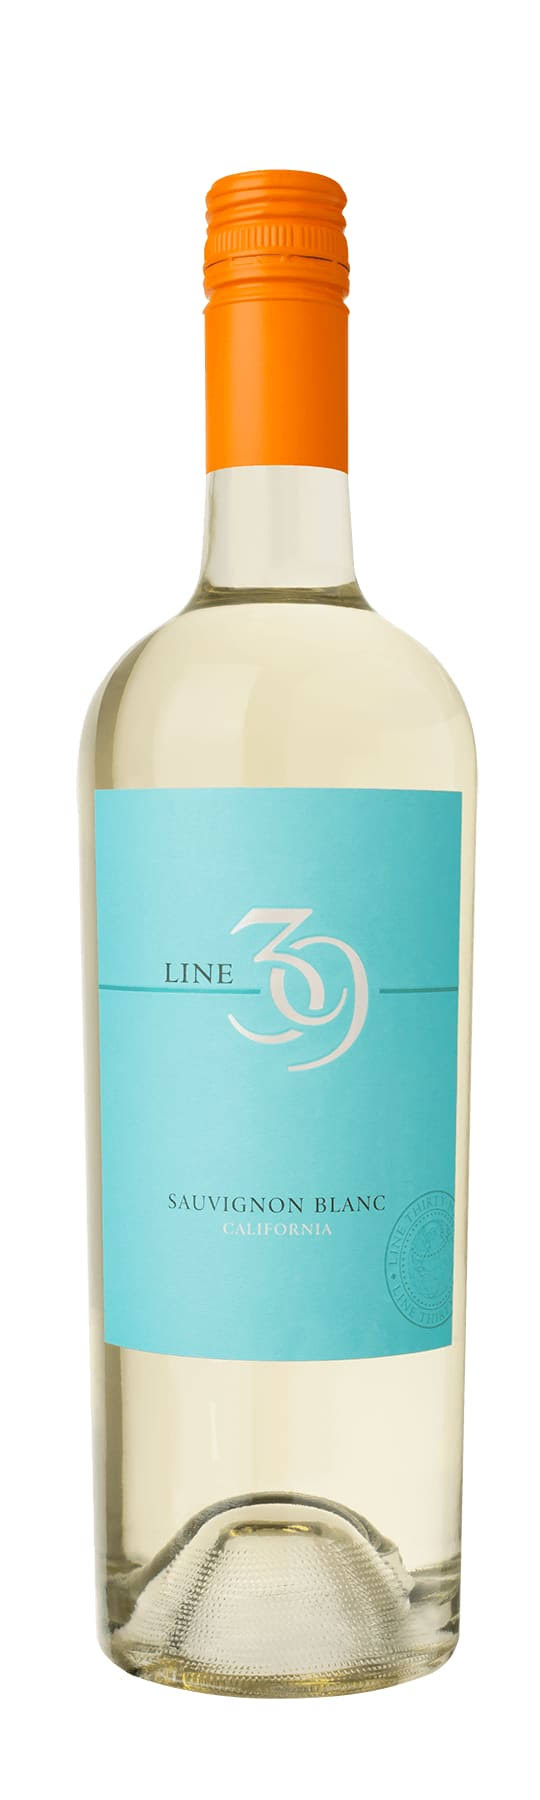 Line 39 Sauvignon Blanc, California - 750 ml